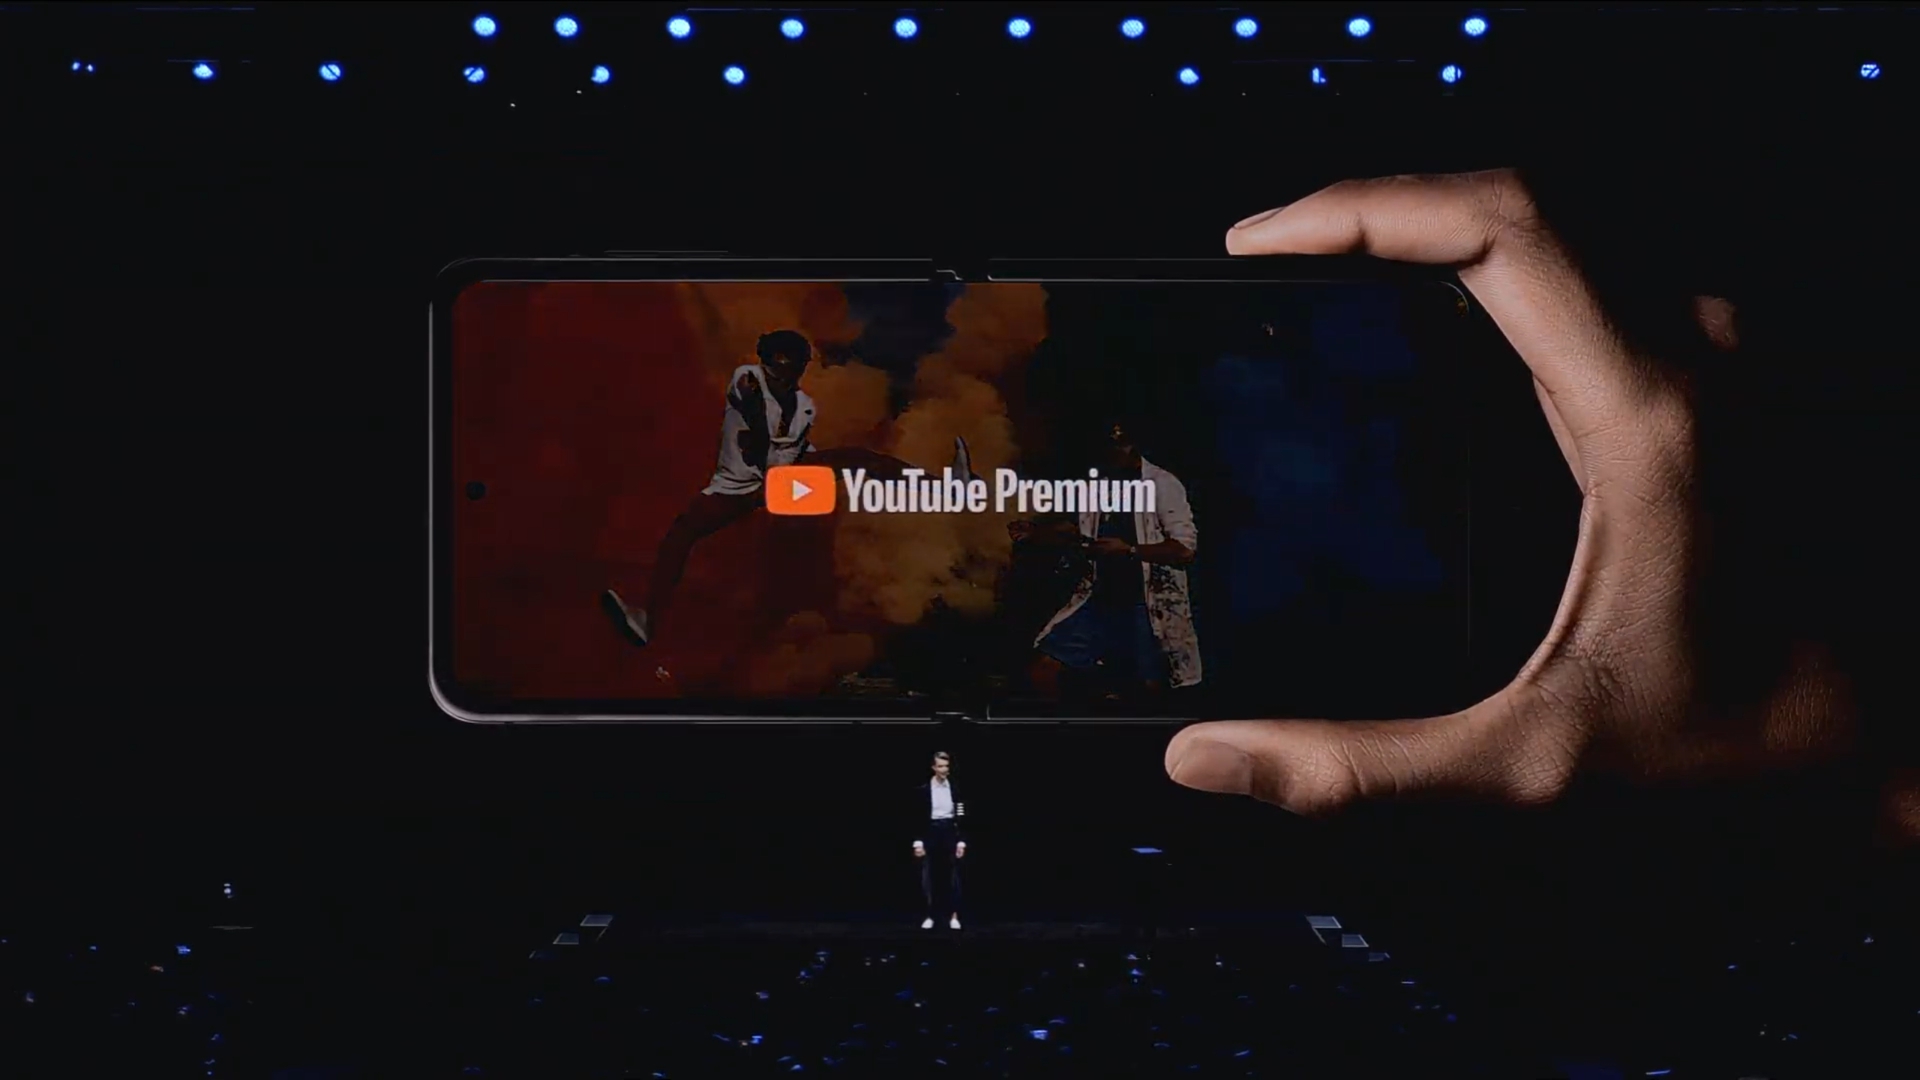 Z FLIP YouTube Premium samsung打开包装2020